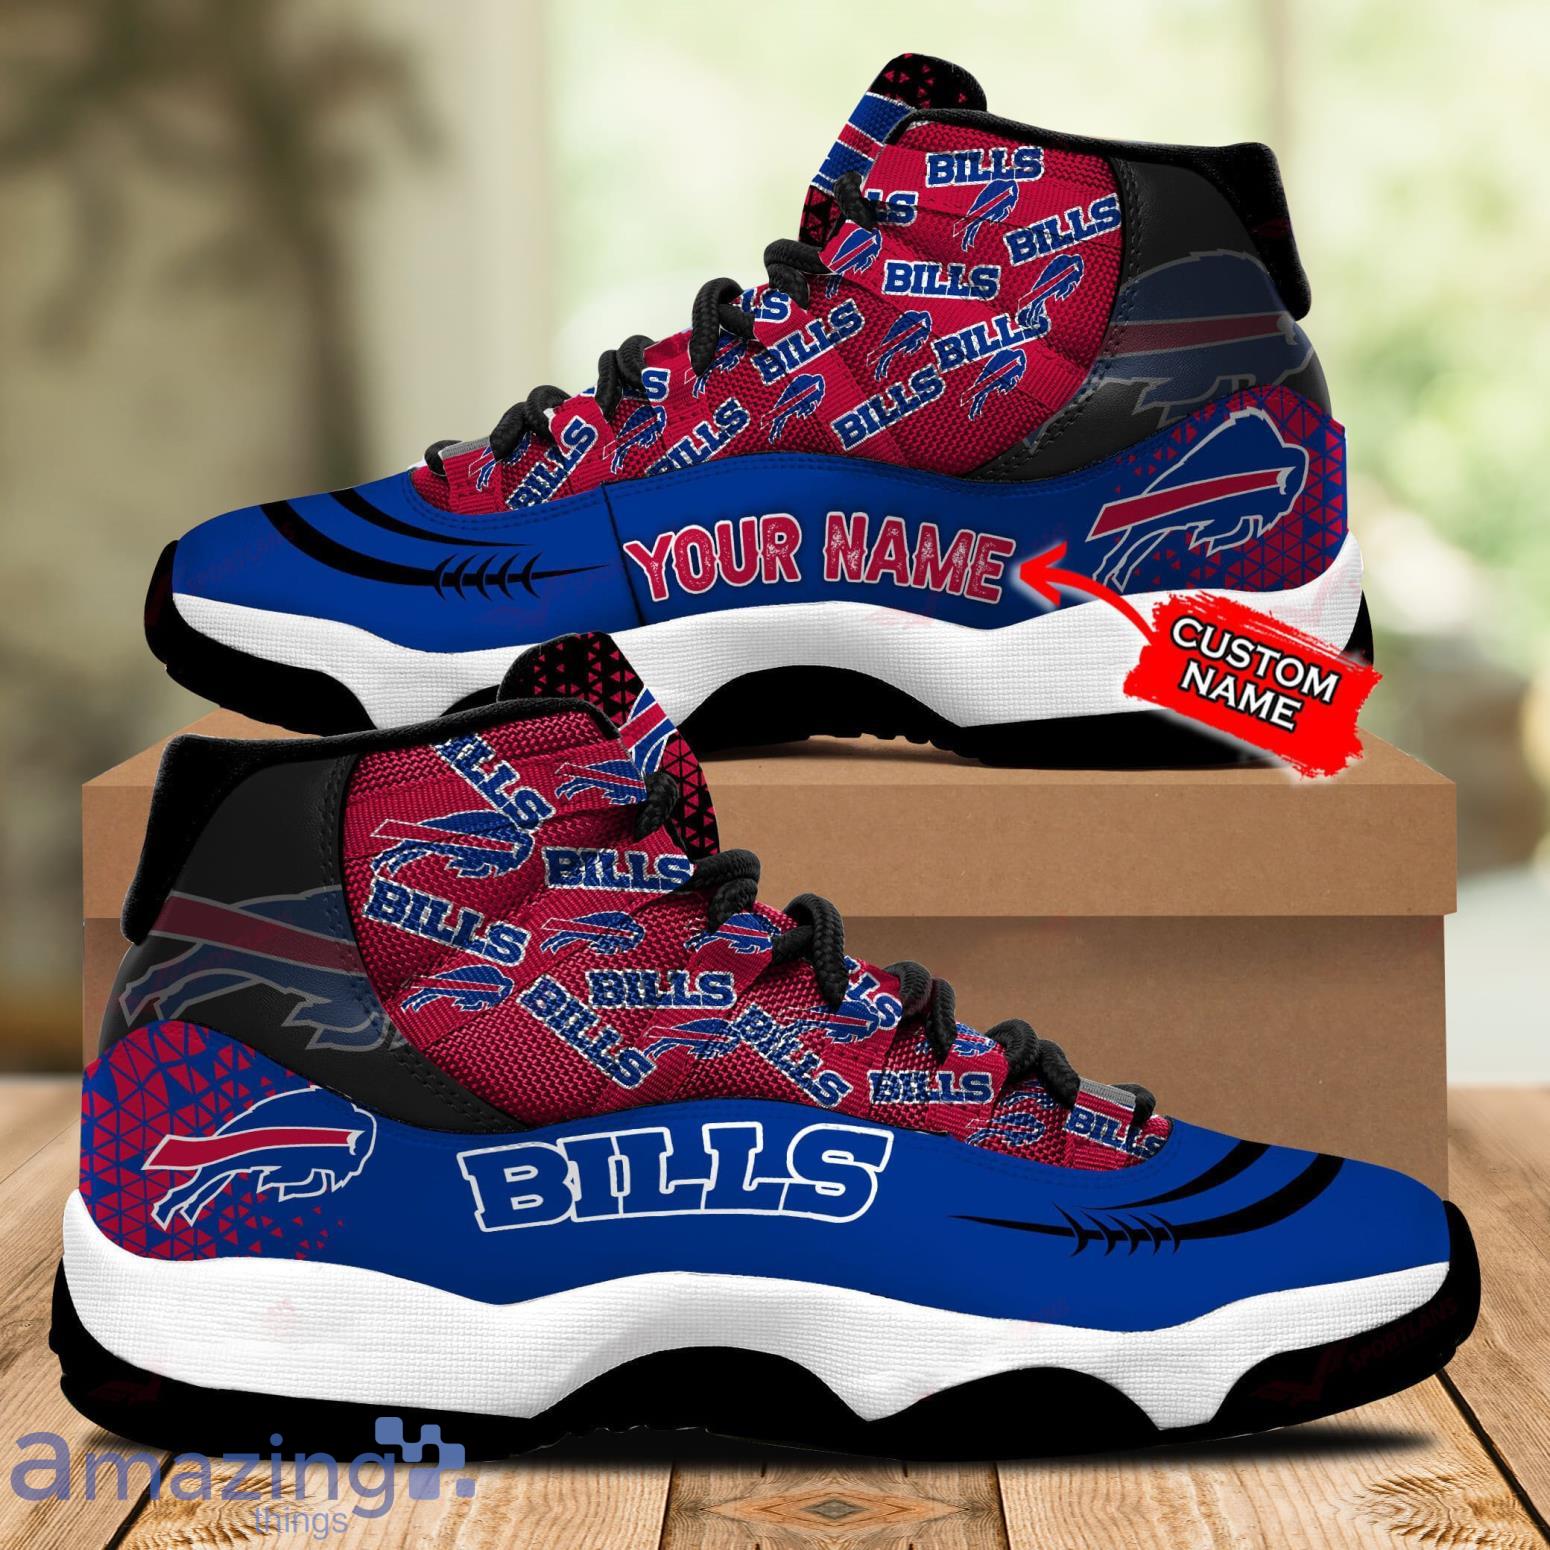 Personalized Buffalo Bills Nfl Team Custom Air Jordan 13 Shoes